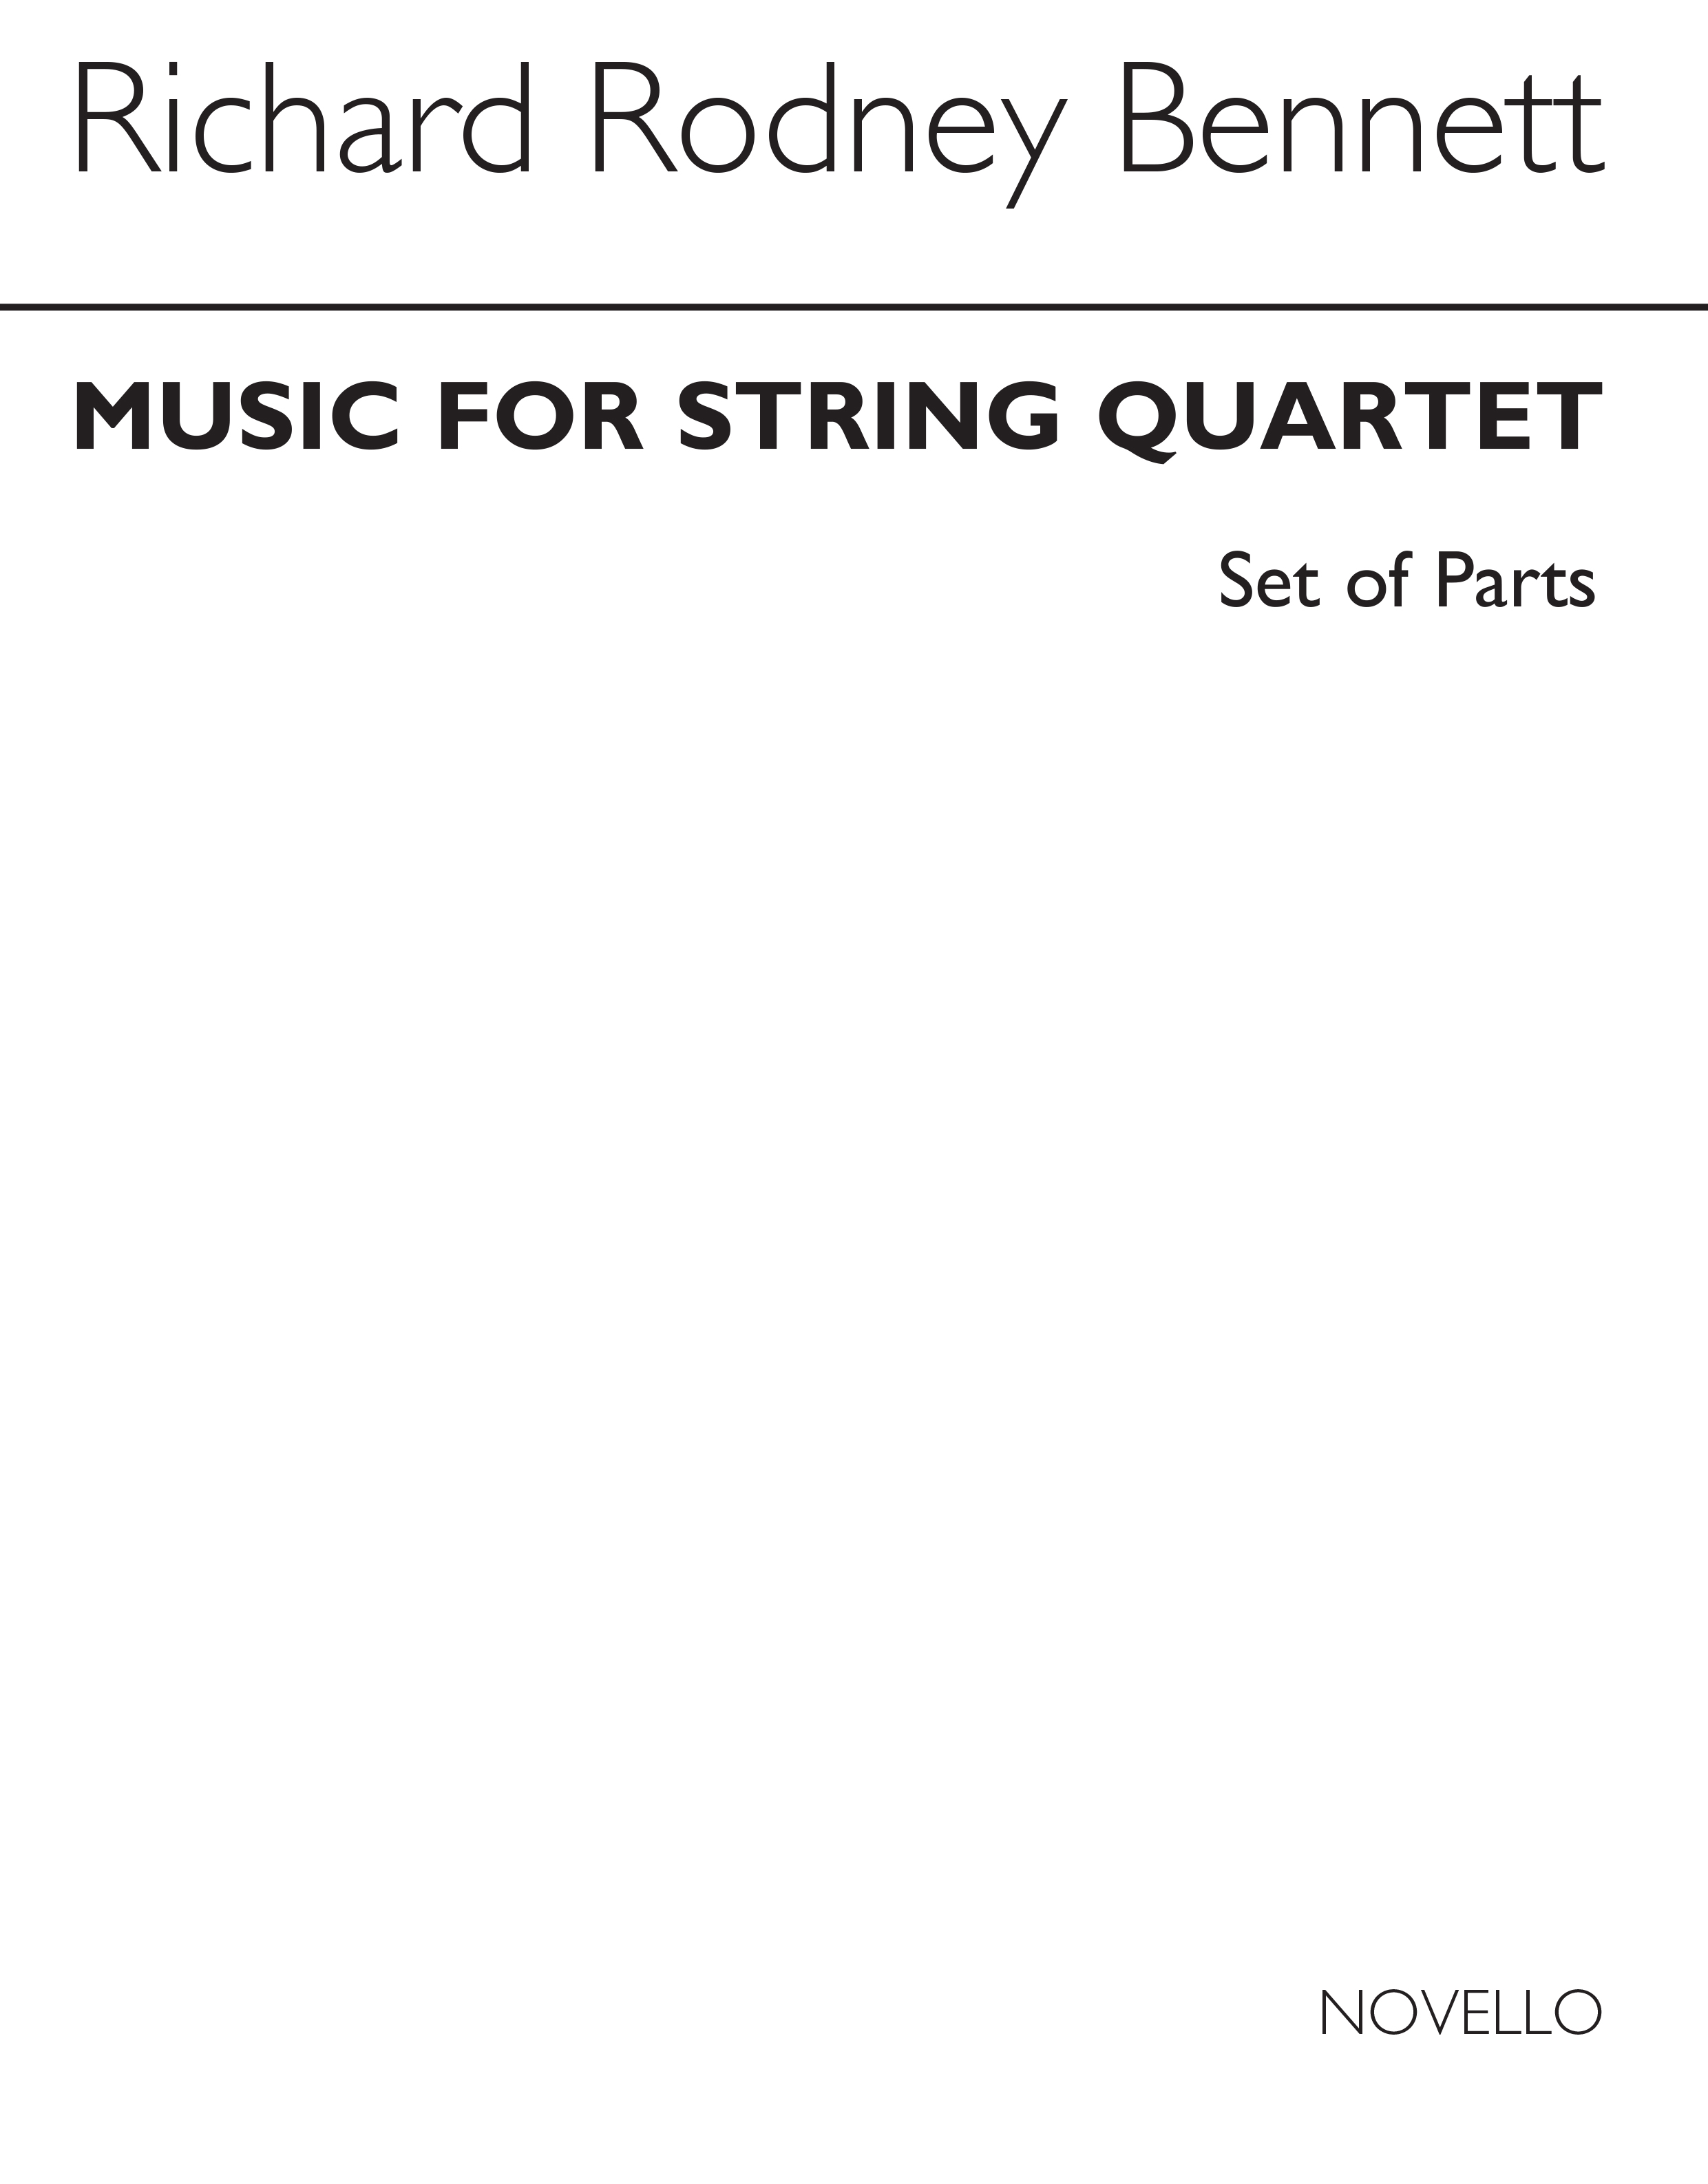 RR Bennett: Music For String Quartet (Parts)